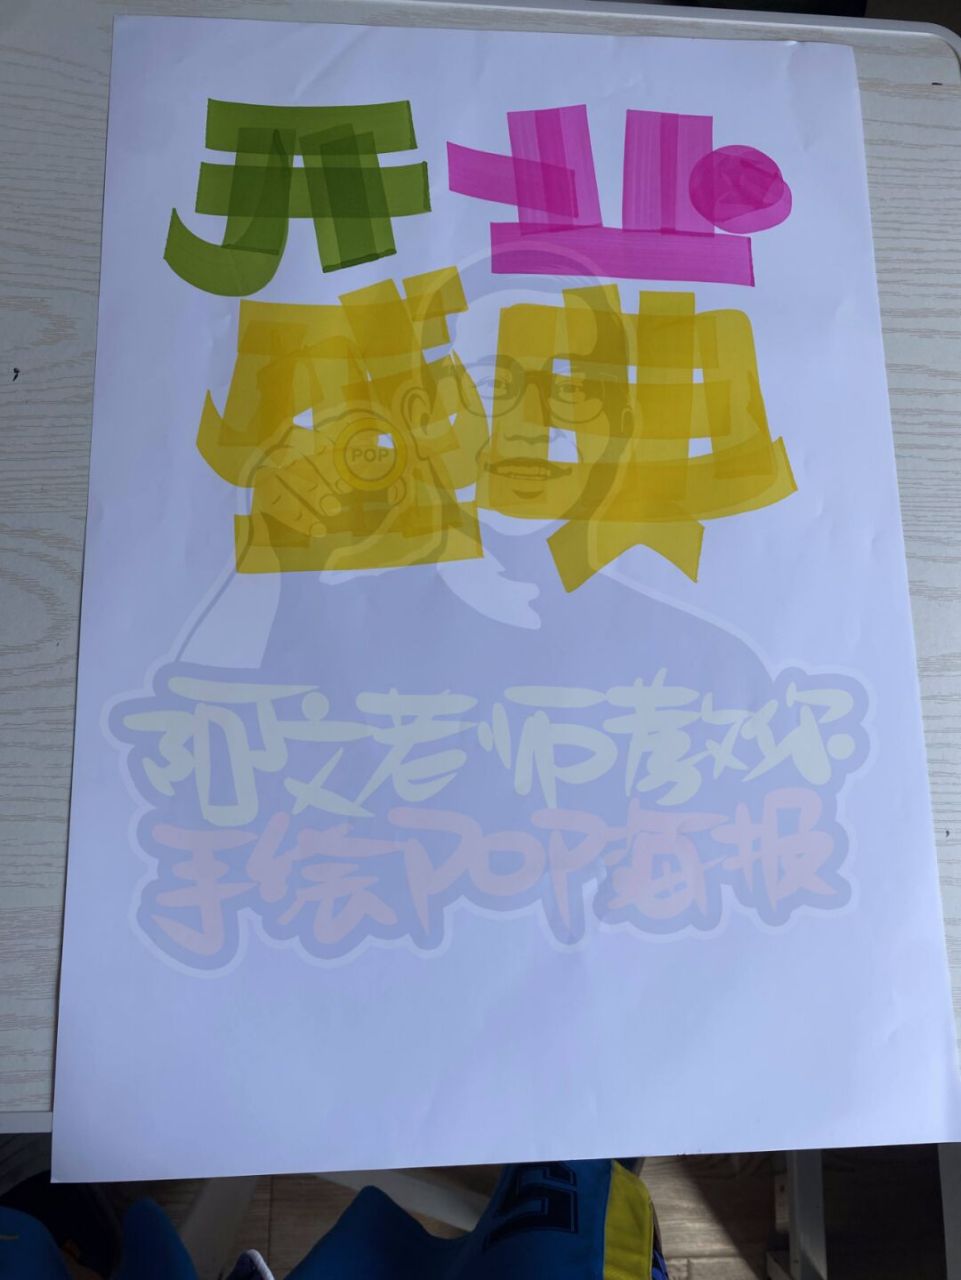 定坤丹的pop手绘海报图片